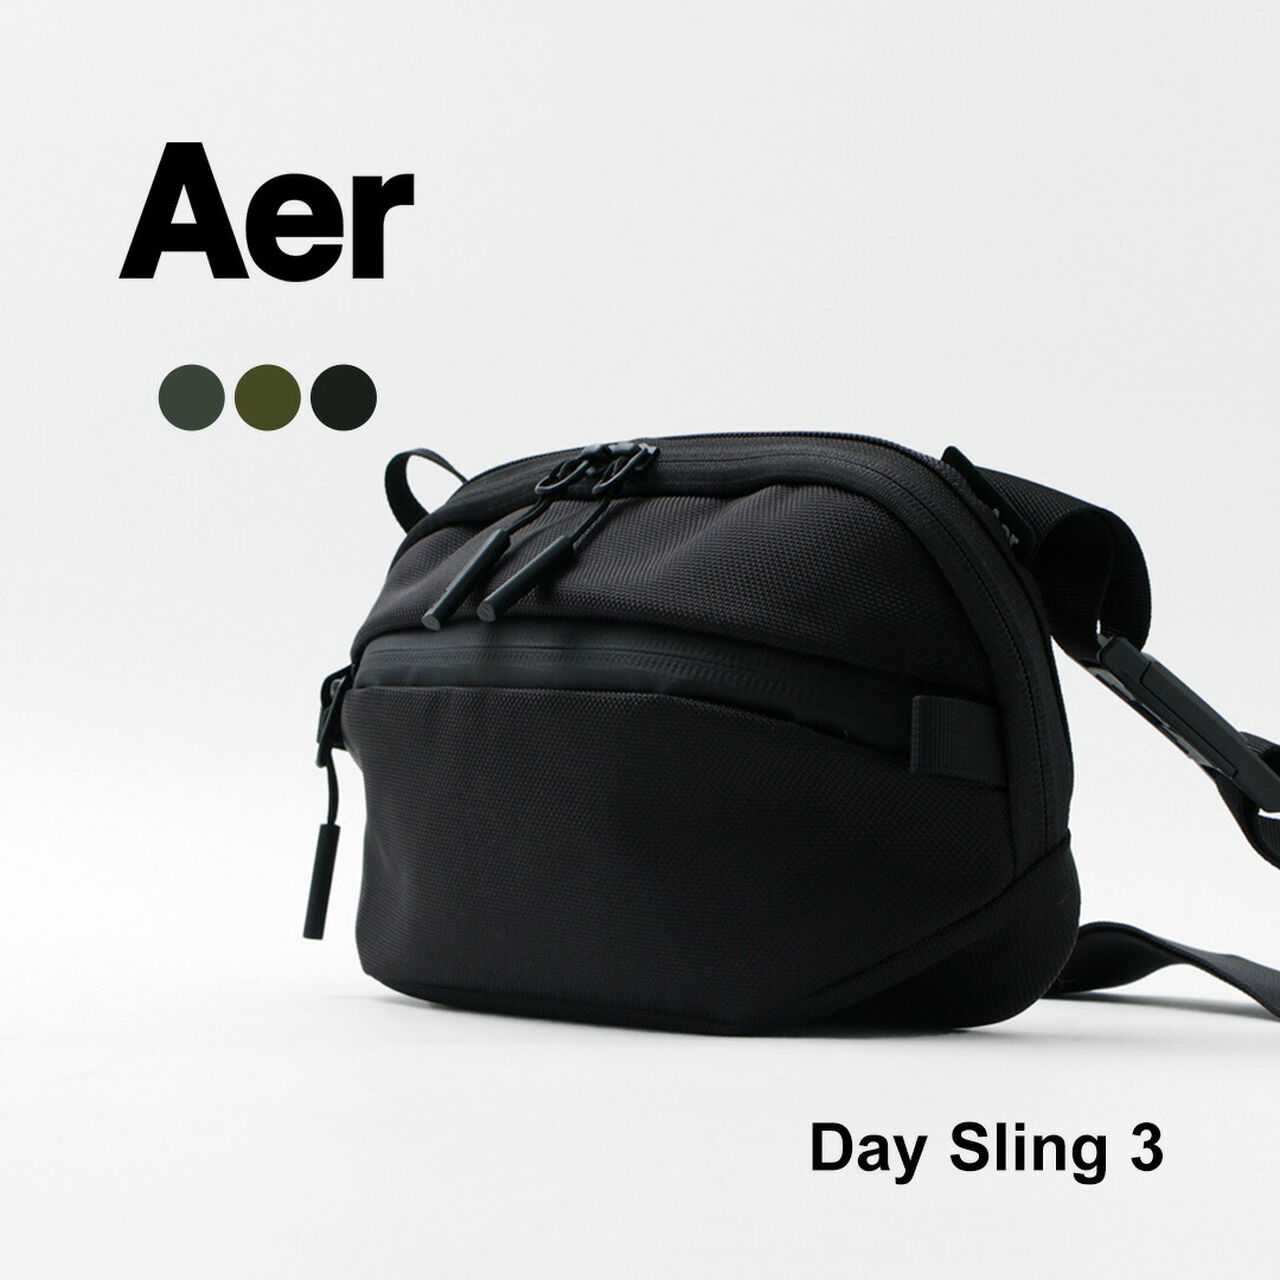 Aer Day Sling 3 Belt Bag in Black